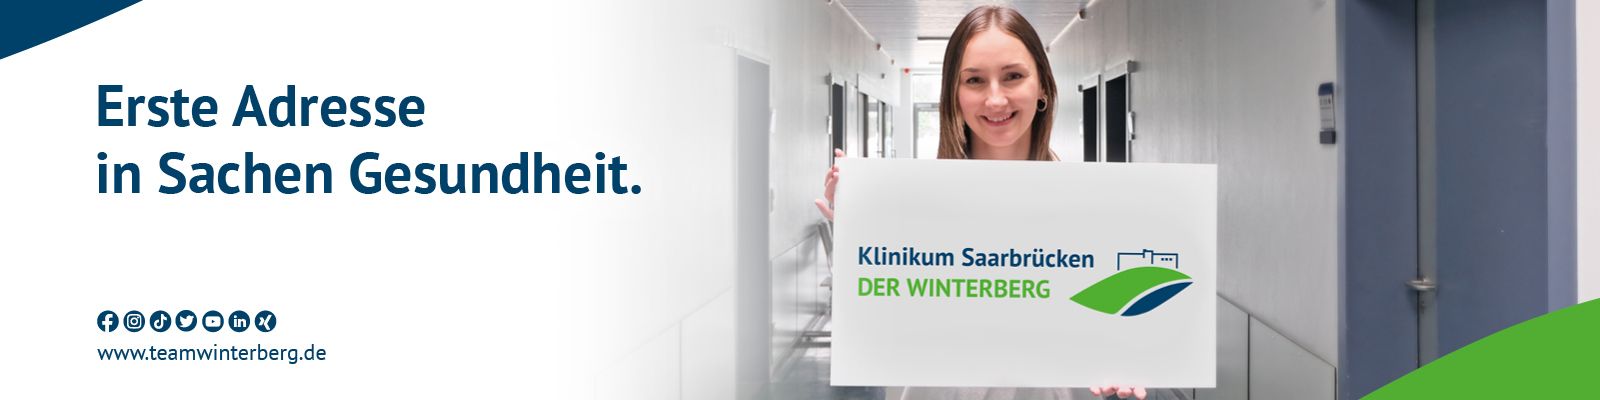 Klinikum Saarbrücken - Mitarbeiter als Markenbotschafter Der_Winterberg_PSchwarzkopf.jpg